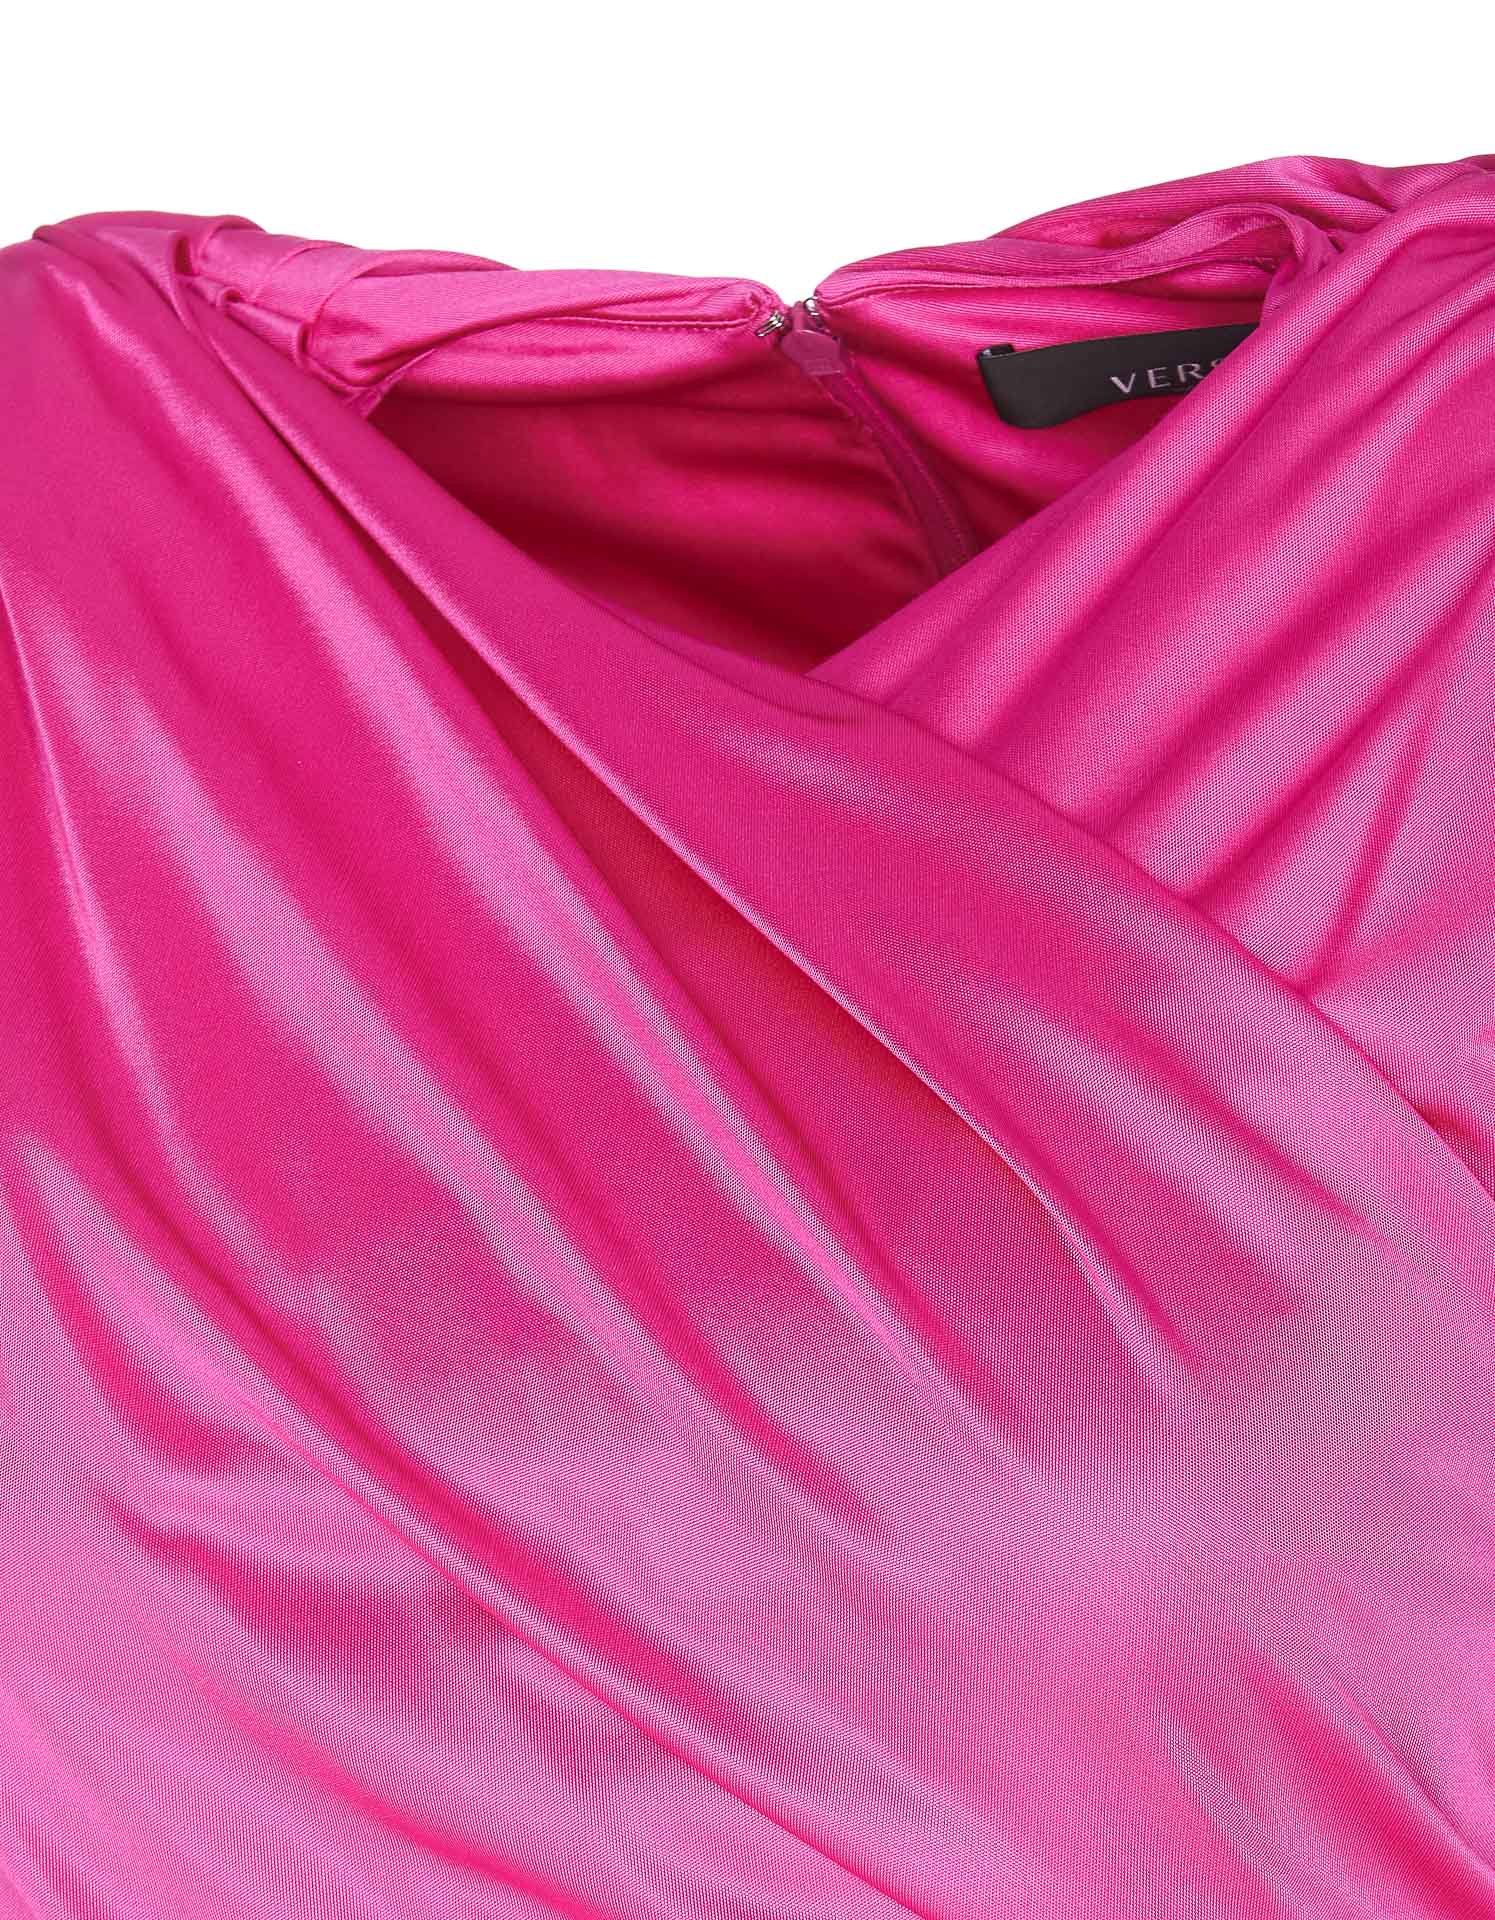 Versace Satin Chiffon Fabric Pink